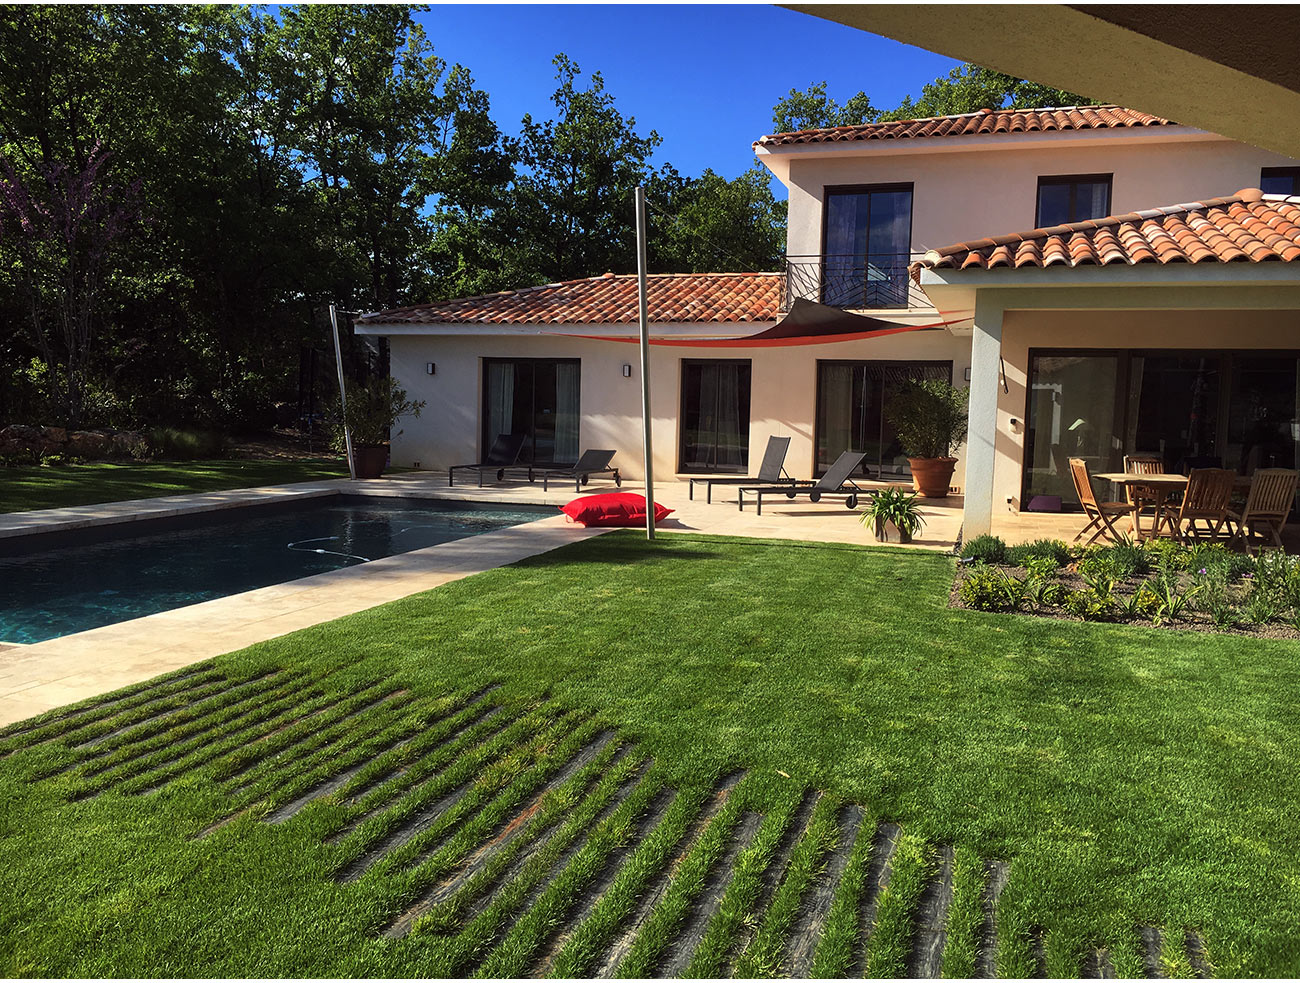 Pas japonais design et terrasse travertin piscine - Architecte paysagiste concepteur Montpellier